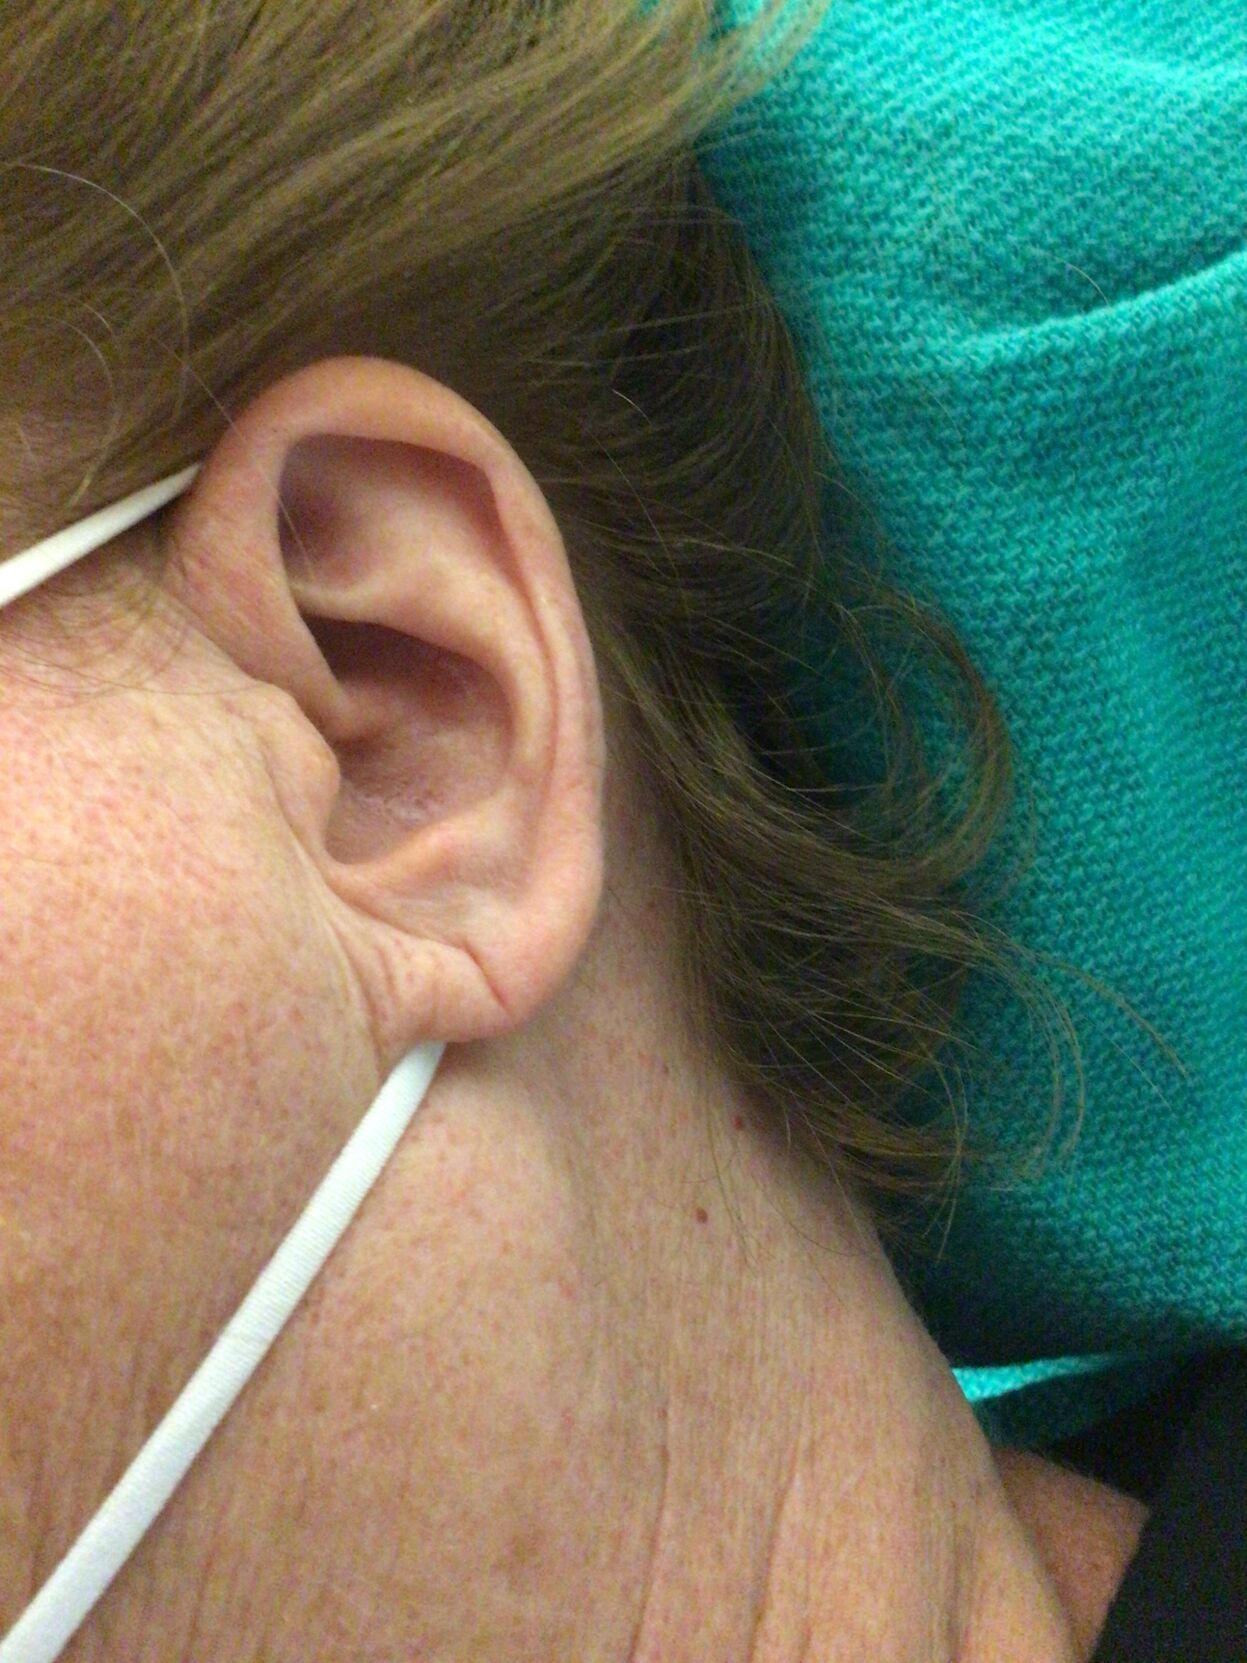 Ear Hole Repair Surgery Cost -